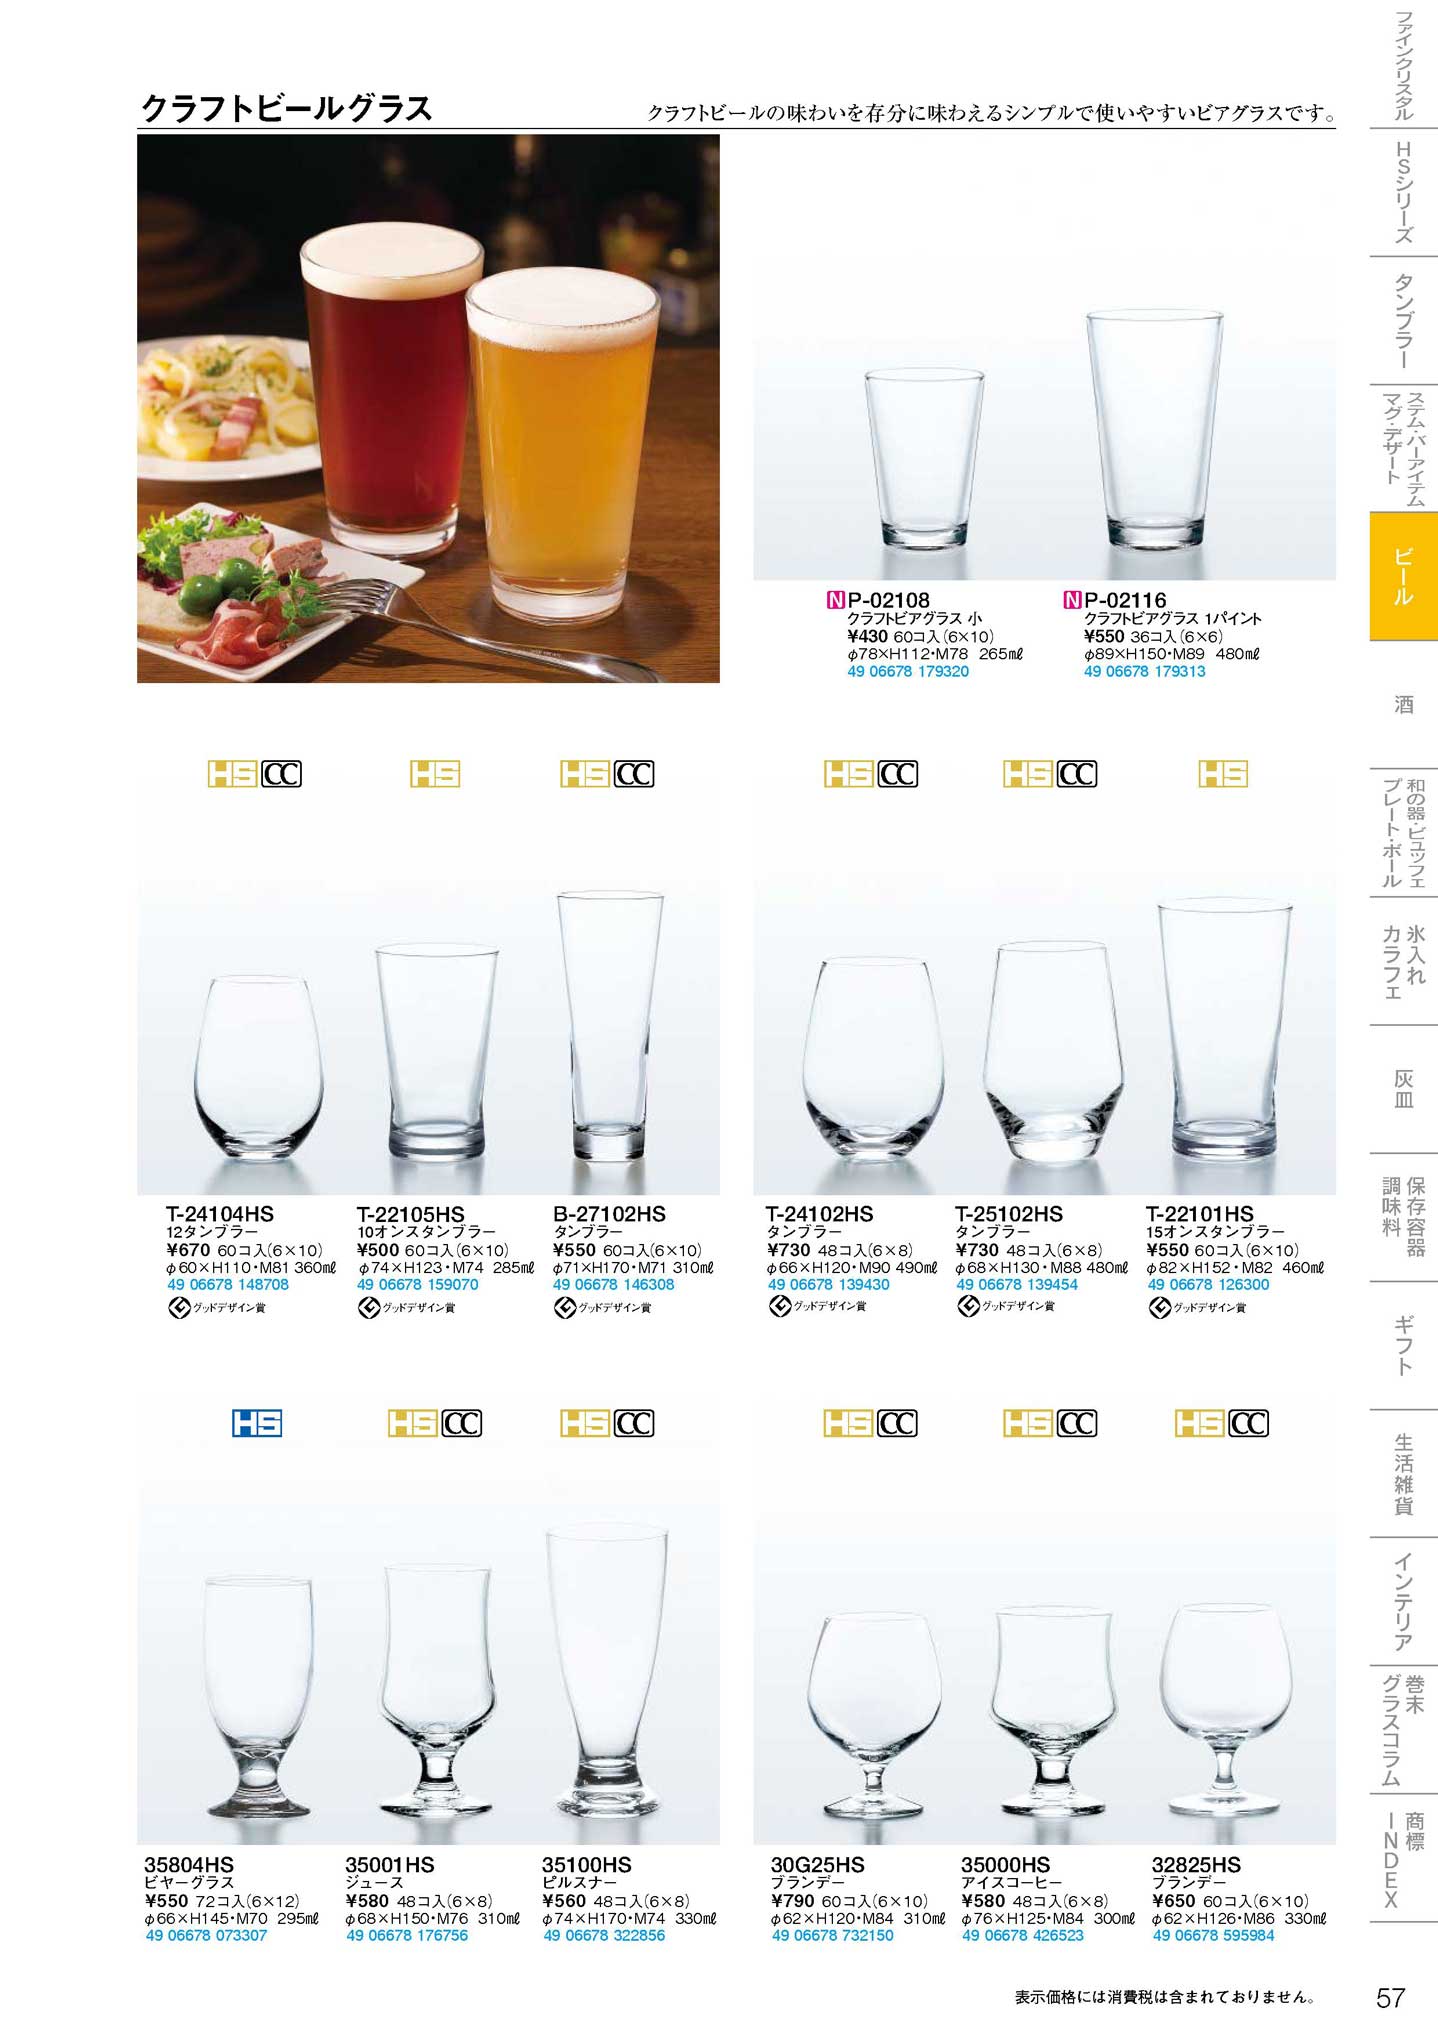 東洋佐々木ガラス ビールグラス ピルスナー (ケース販売) 食洗機対応 日本製 約330ml 30801 72個入 クリア 食器、グラス、カトラリー